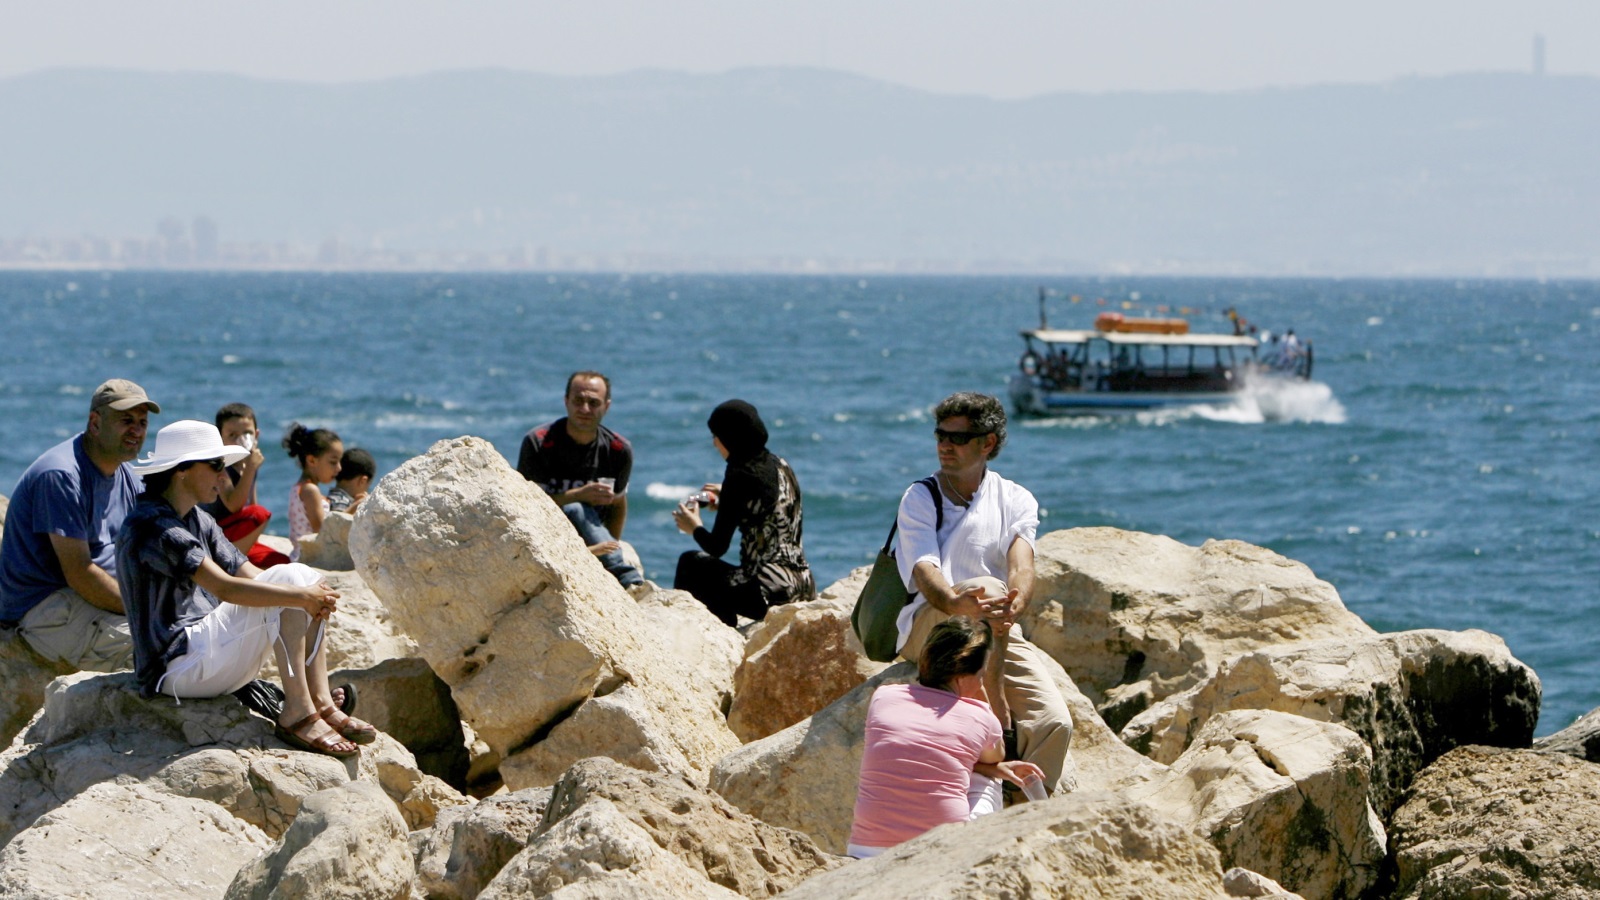 بلغت نسبة السياح العرب (باستثناء السوريين) في لبنان 53% من السياح الذين زاروا لبنان سنة 2010